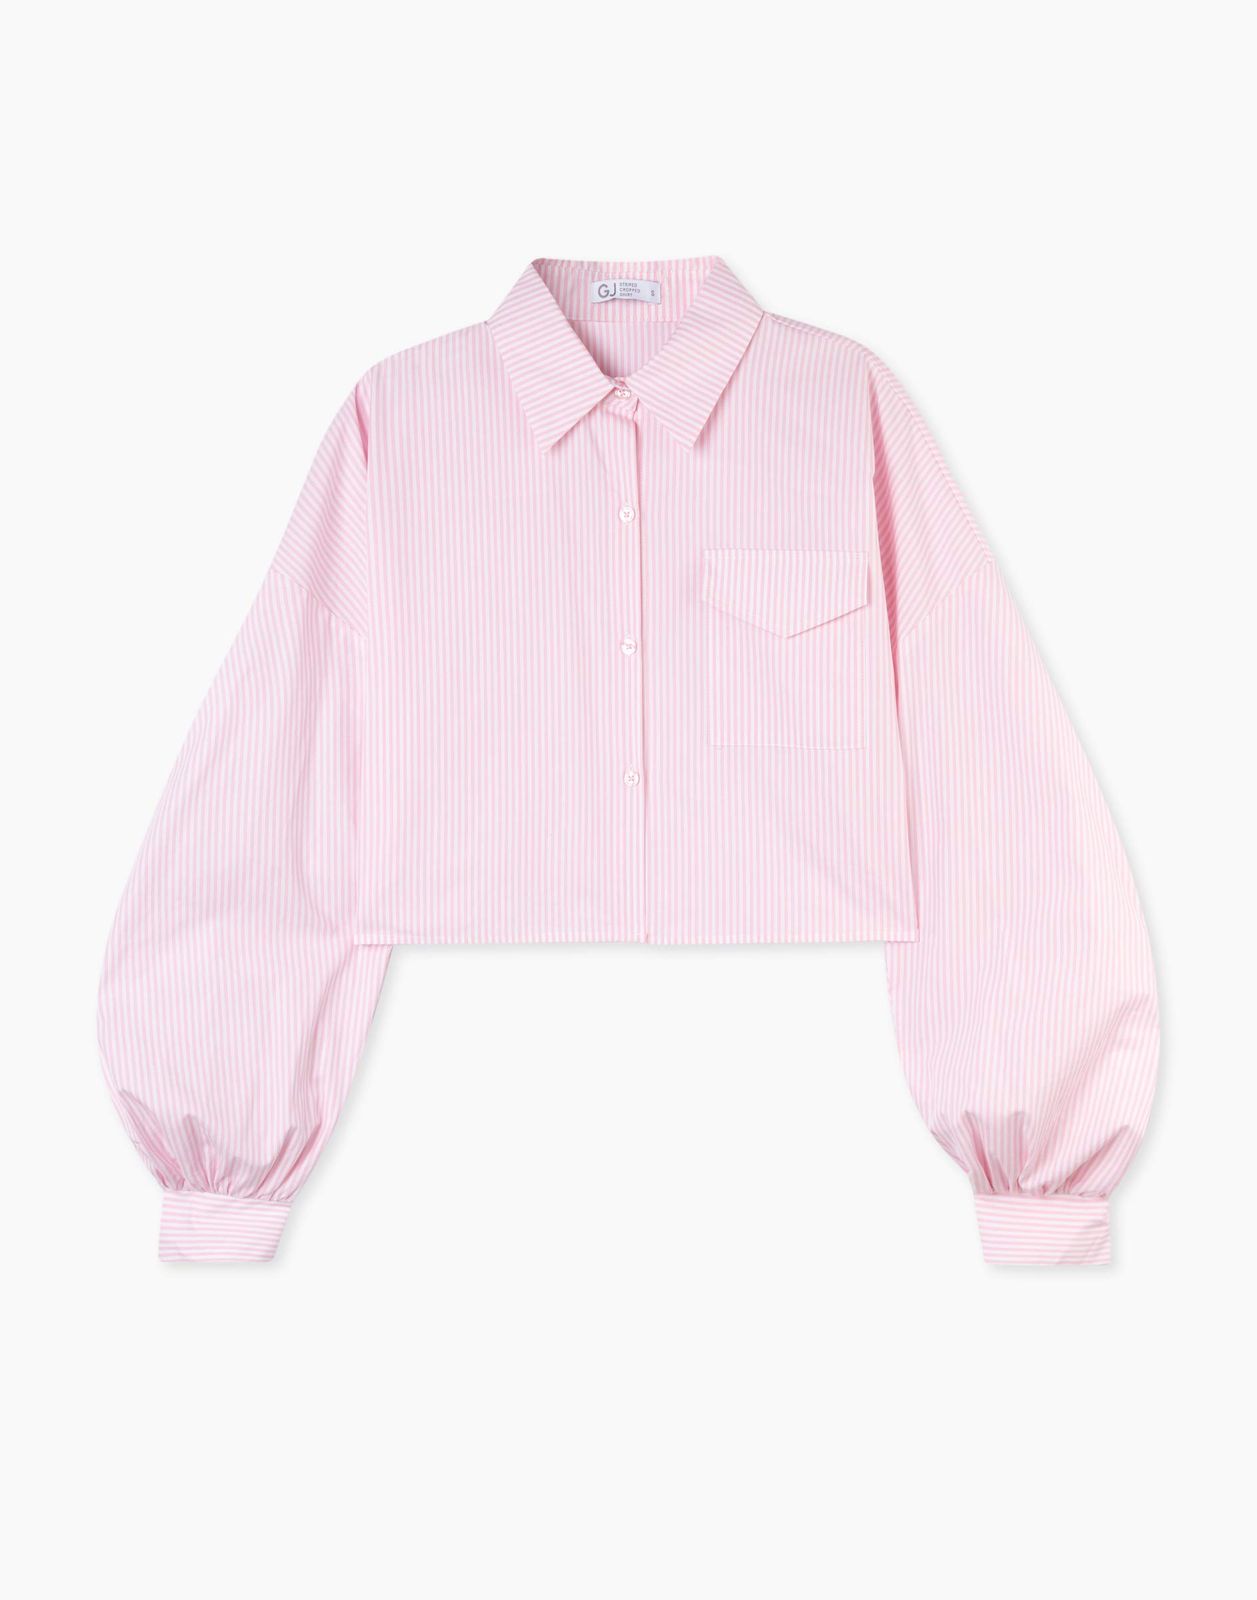 Рубашка женская Gloria Jeans GWT003971 белый/розовый L/170